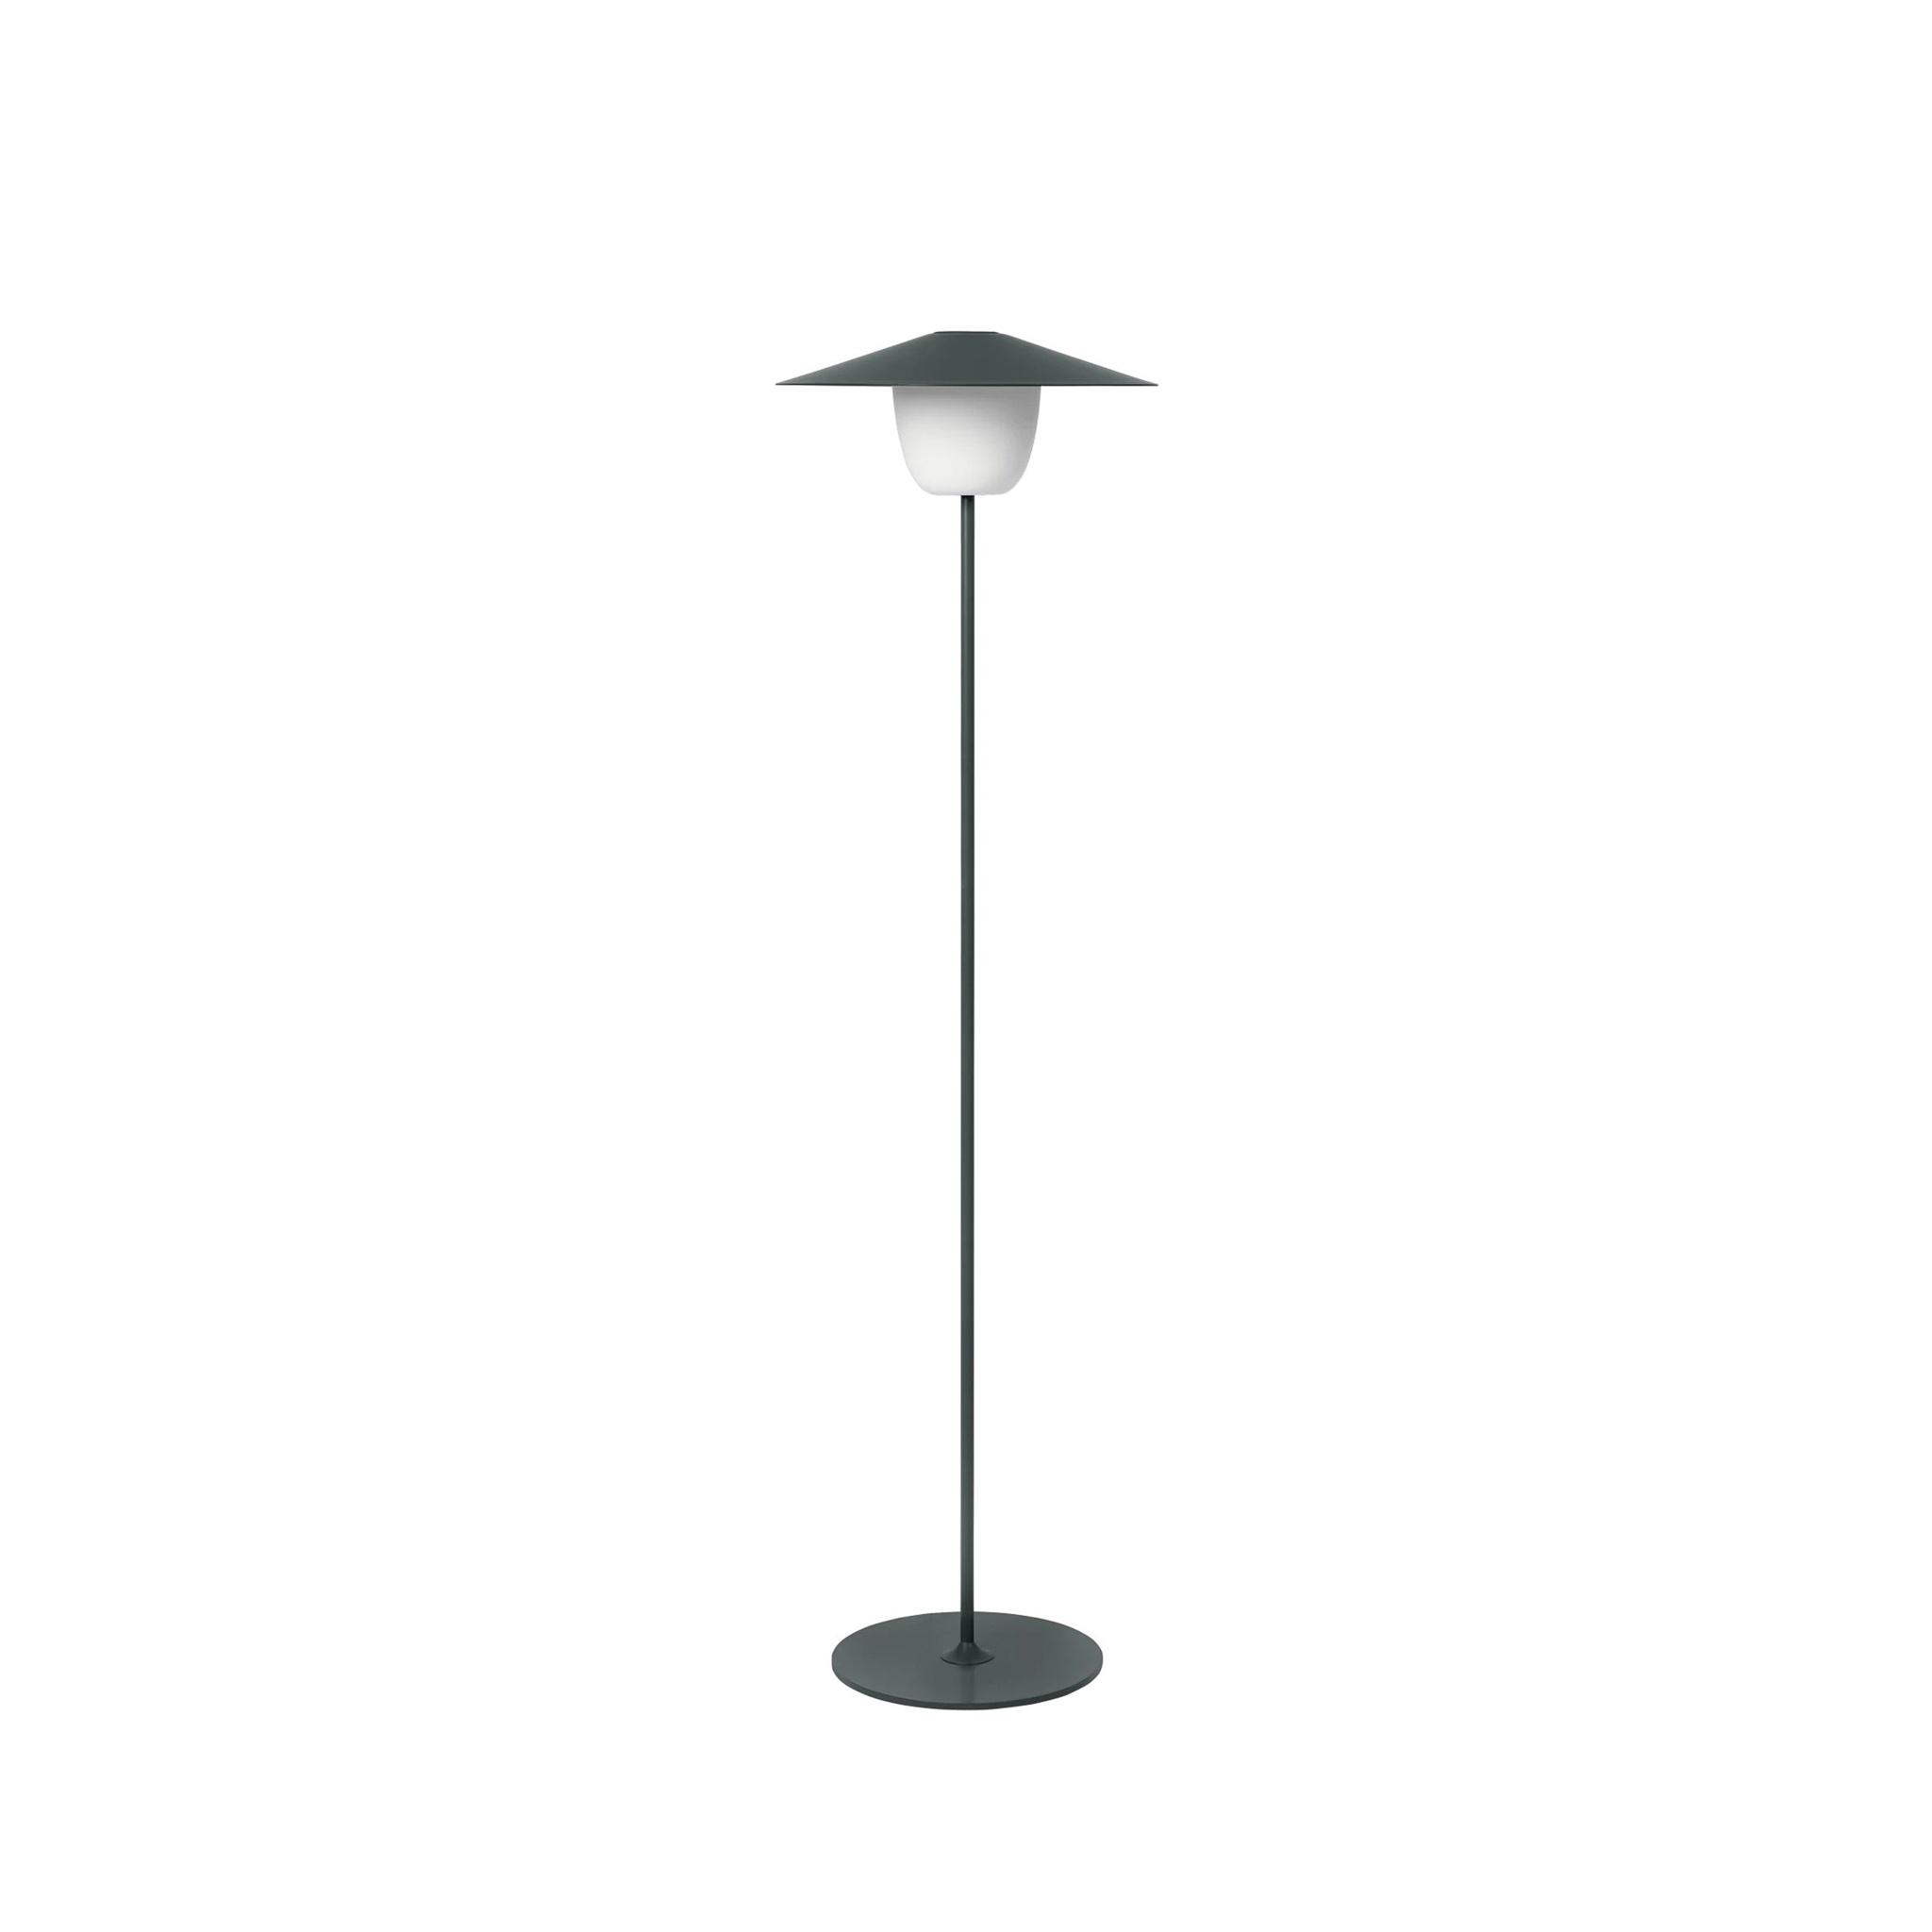 BLOMUS // ANI LAMP FLOOR - MOBILE LED FLOOR LAMP | MAGNET